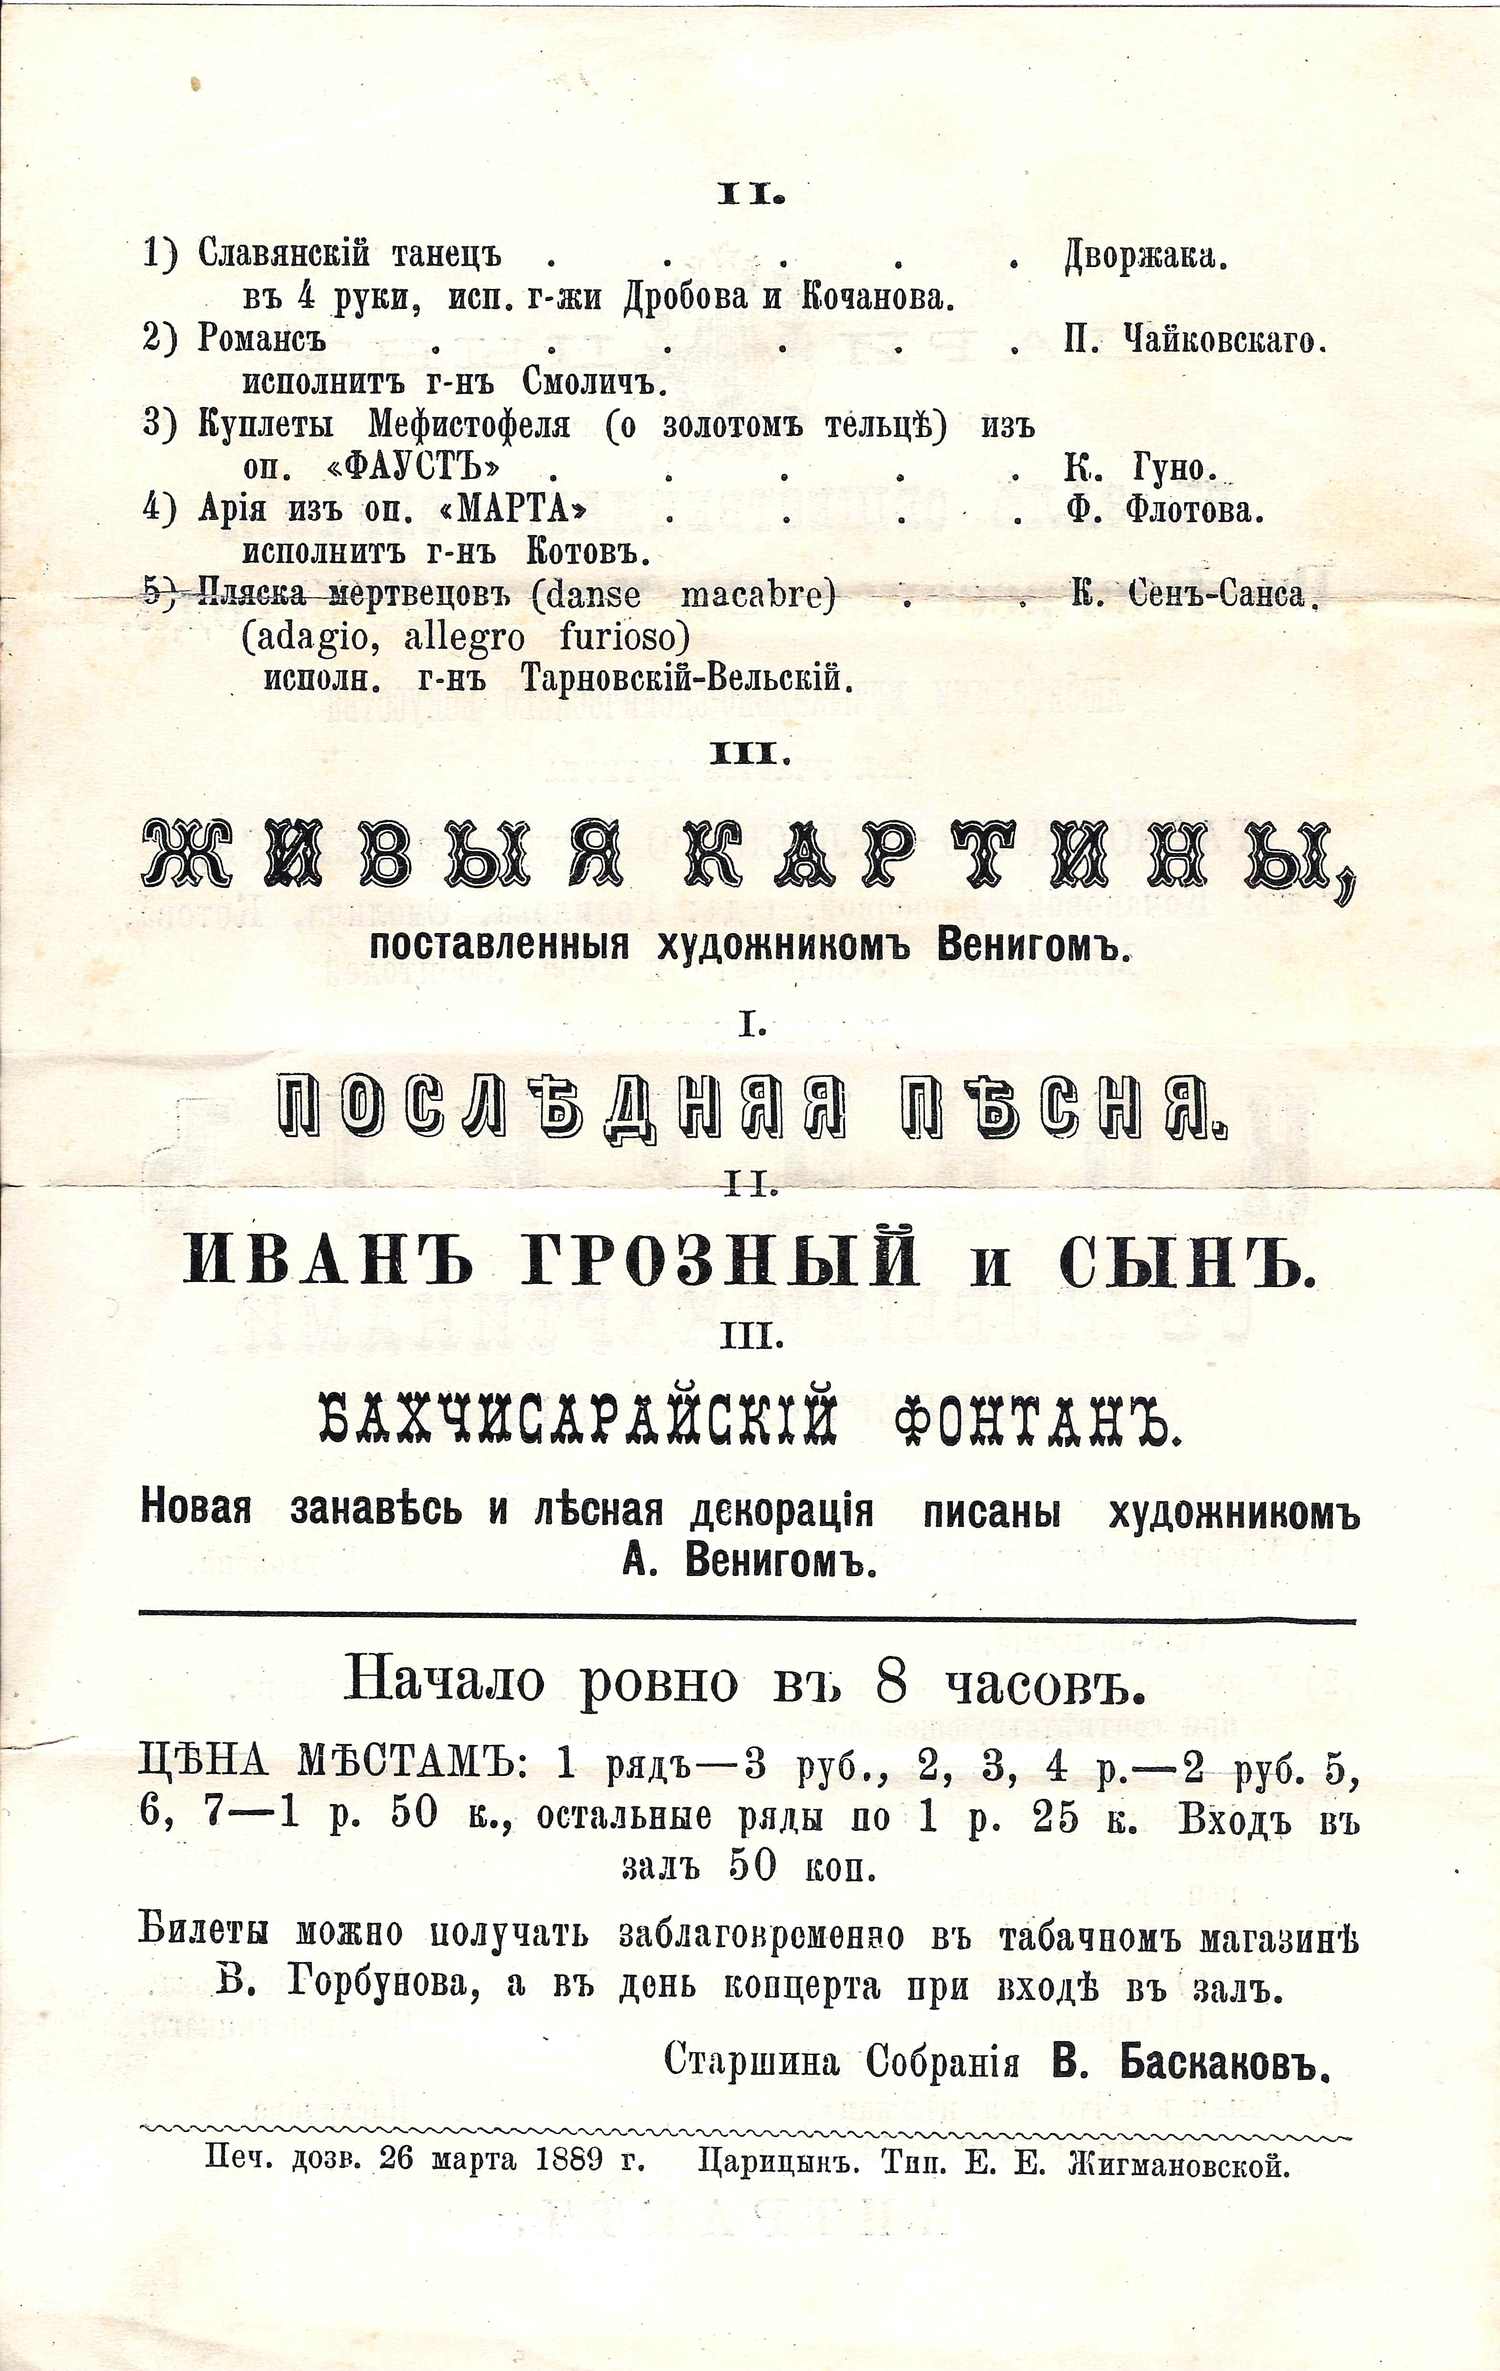 Программа концерта в зале Общественного собрания города Царицына 26 марта 1889 года.